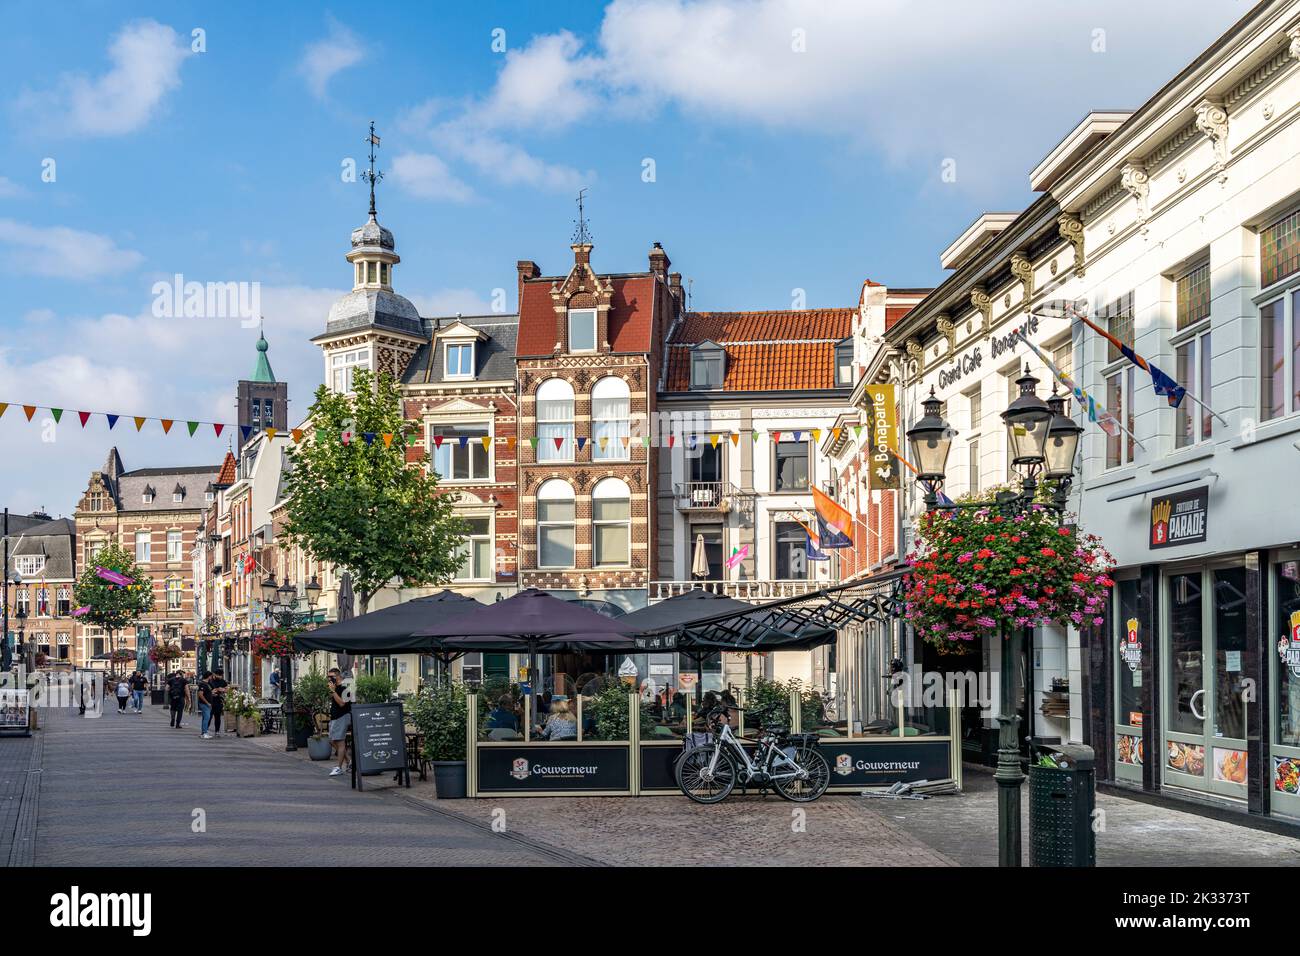 In der Altstadt in Venlo, Niederlande | la vieille ville de Venlo, pays-Bas Banque D'Images